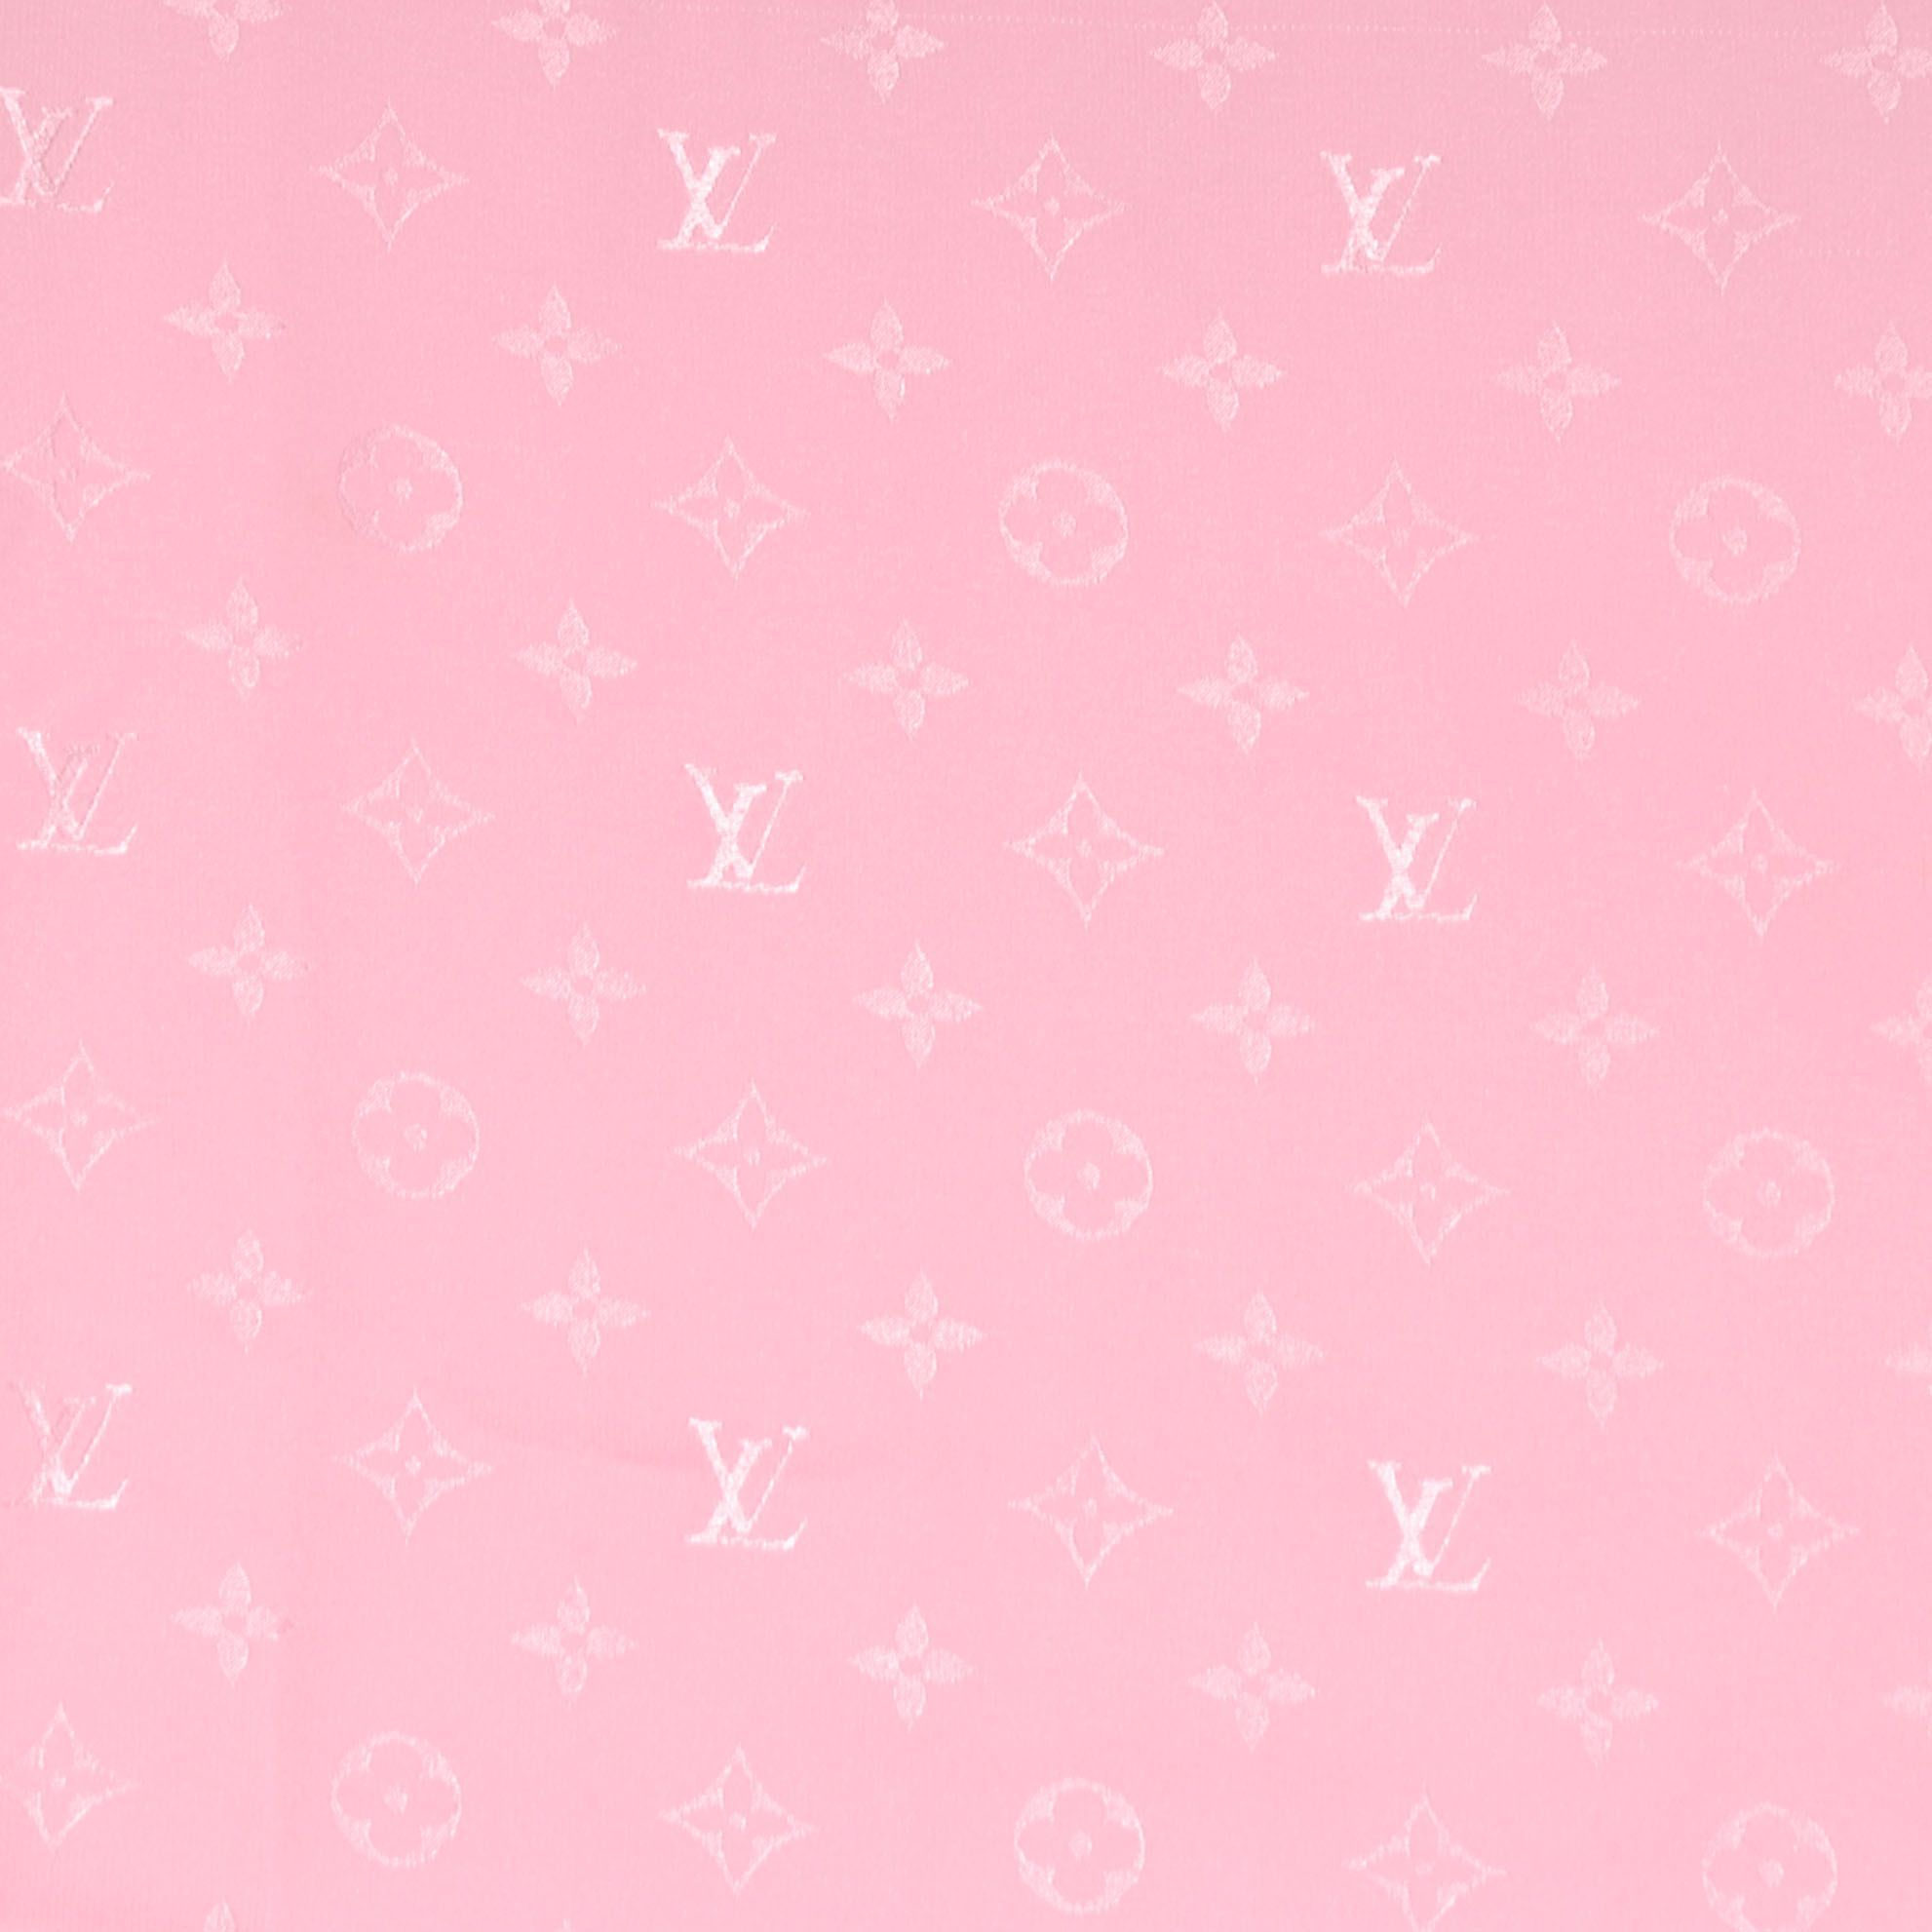 Thiết kế nền hình nền Y2K hồng đậm này rất phù hợp cho bạn nếu bạn thích màu hồng tươi sáng. Hình nền này còn kết hợp những thiết kế đơn giản và độc đáo, giúp nó trông cực kỳ phong cách. Hãy xem bức ảnh liên quan để thêm thông tin về hình nền Y2K hồng này.